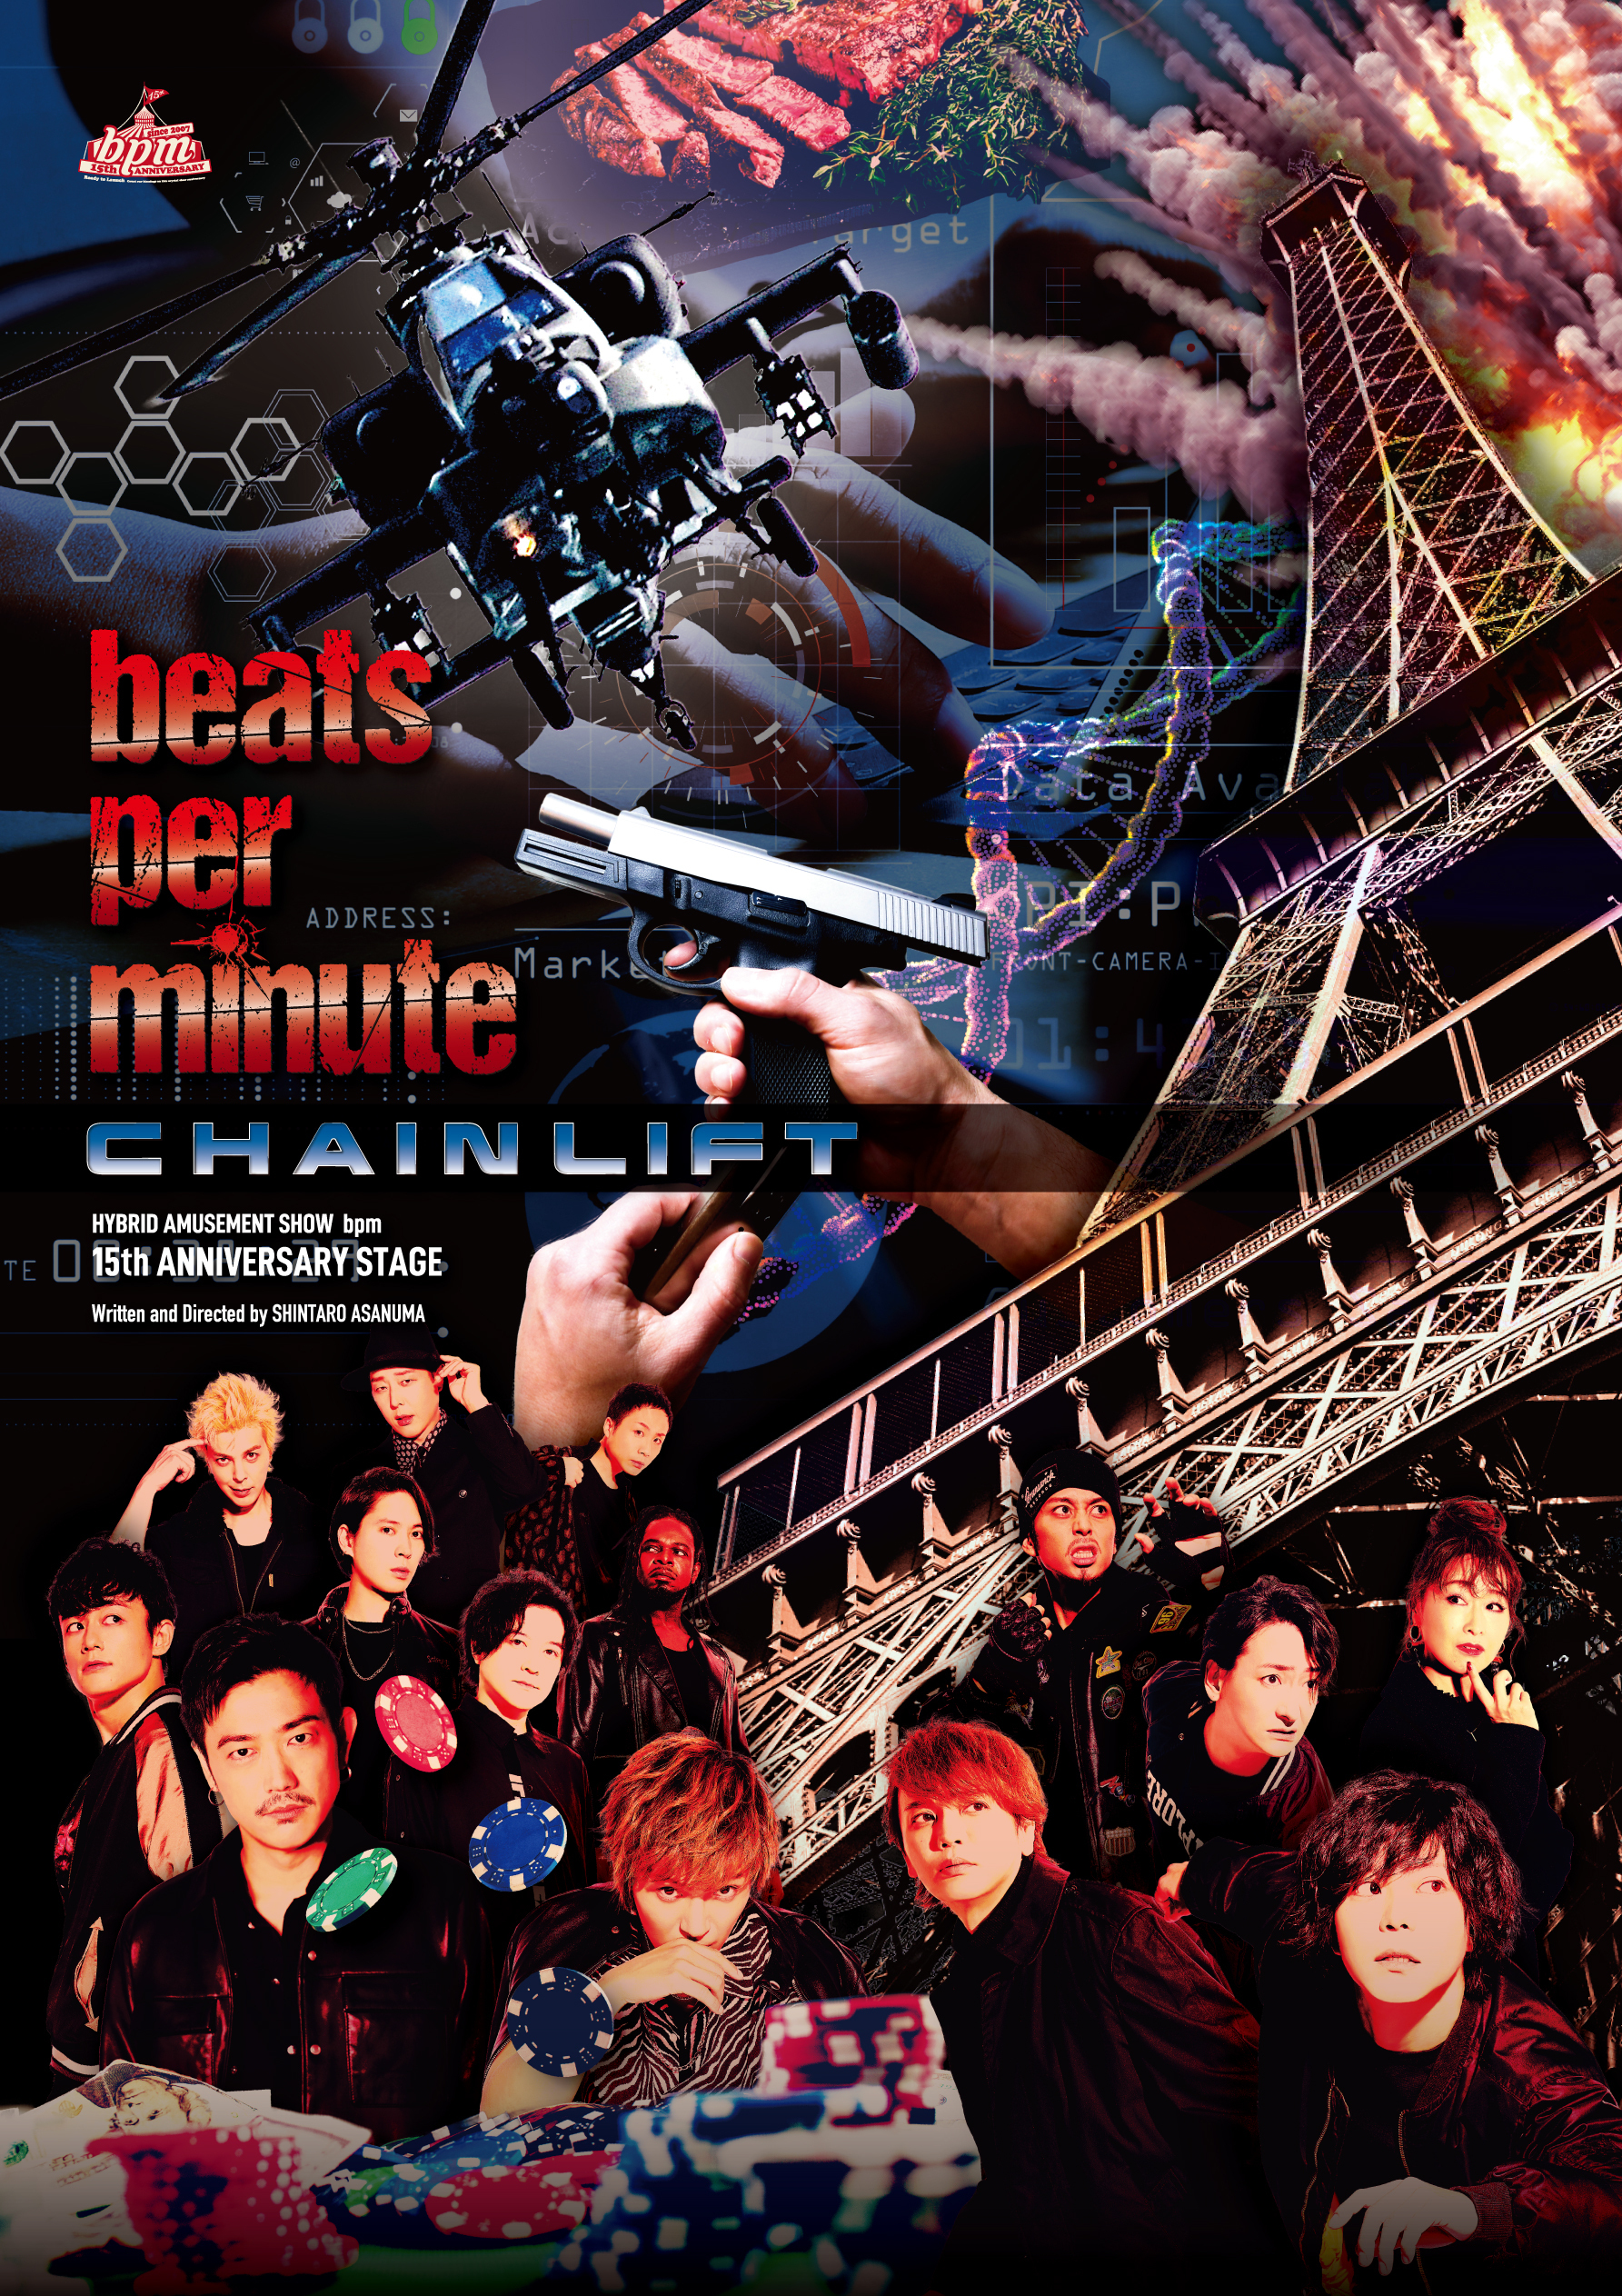 bpm15周年記念公演「beats per minute CHAIN LIFT」 class=